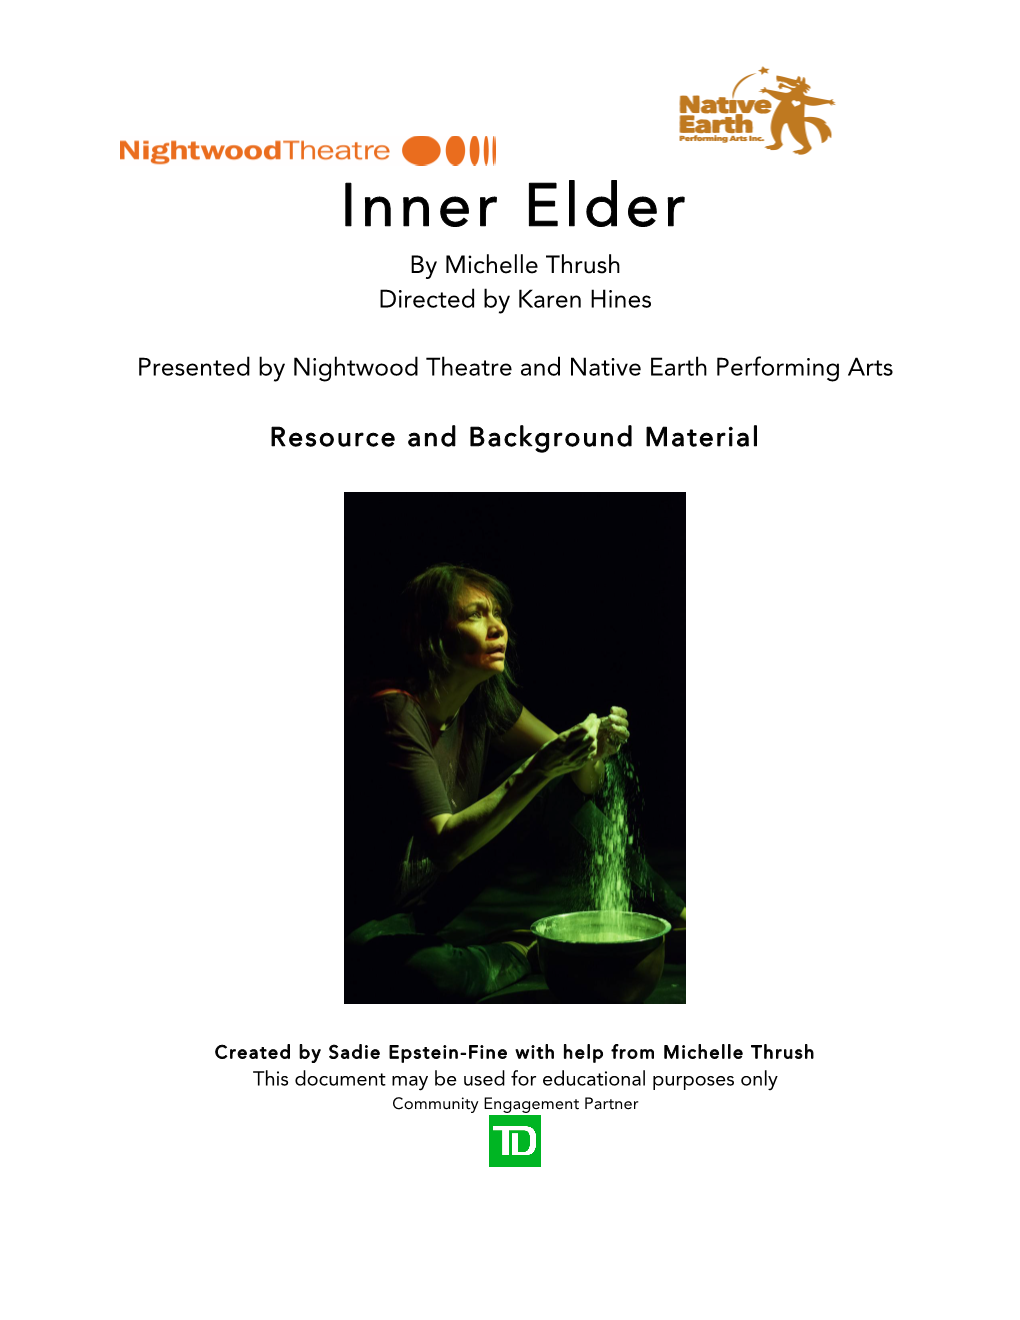 Education Guide for Inner Elder